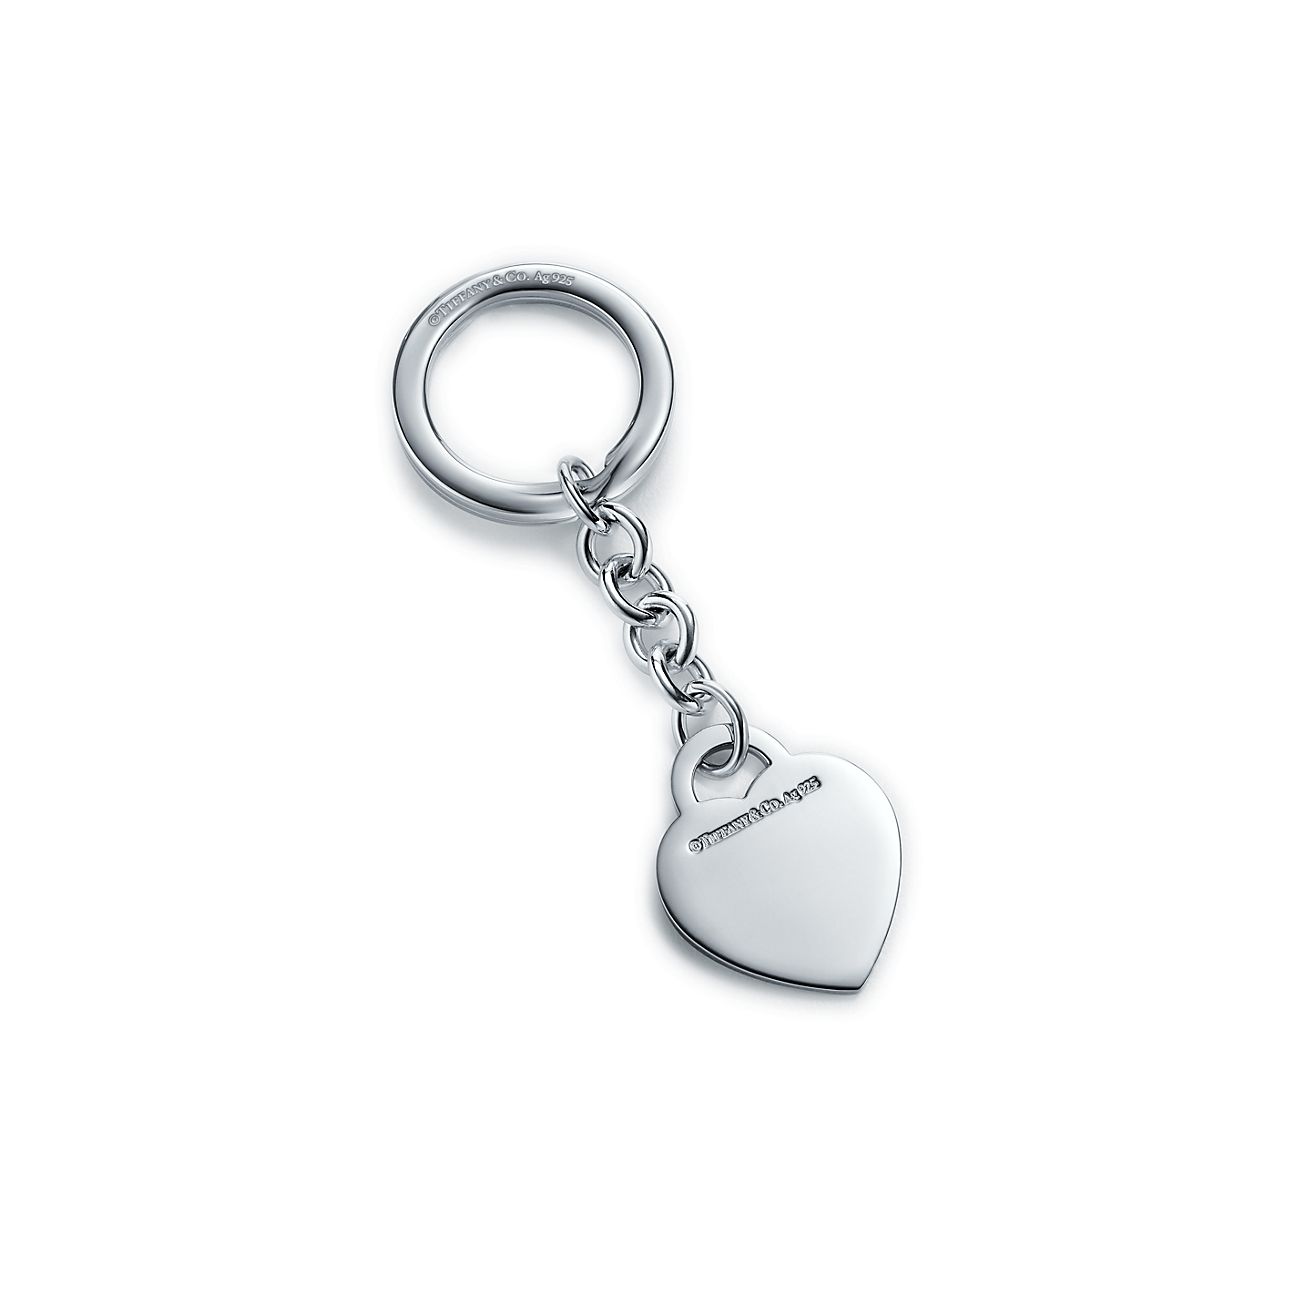 tiffany heart key ring